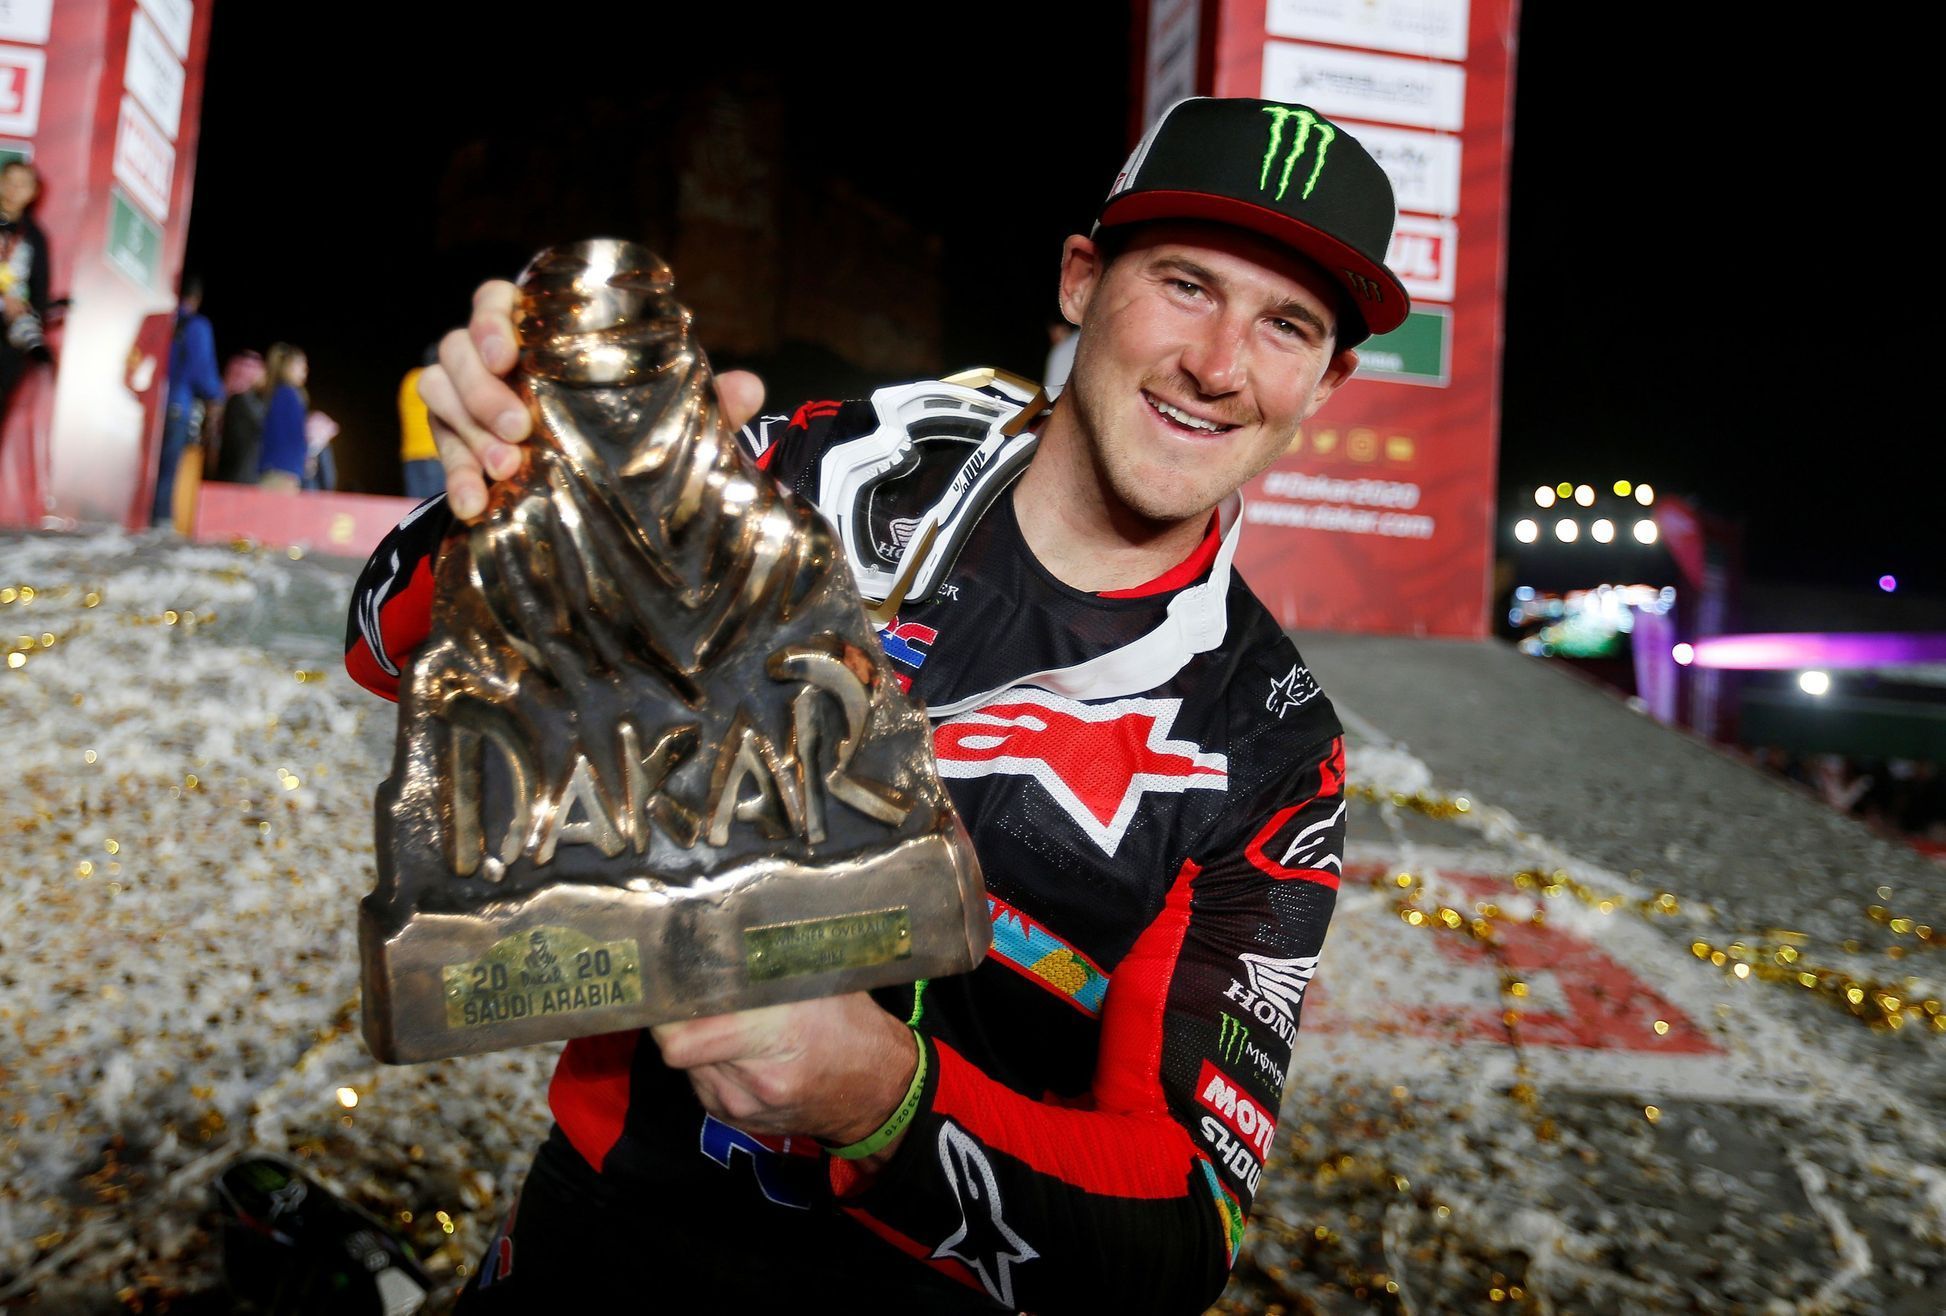 Motocyklista Ricky Brabec slaví vítězství v Rallye Dakar 2020